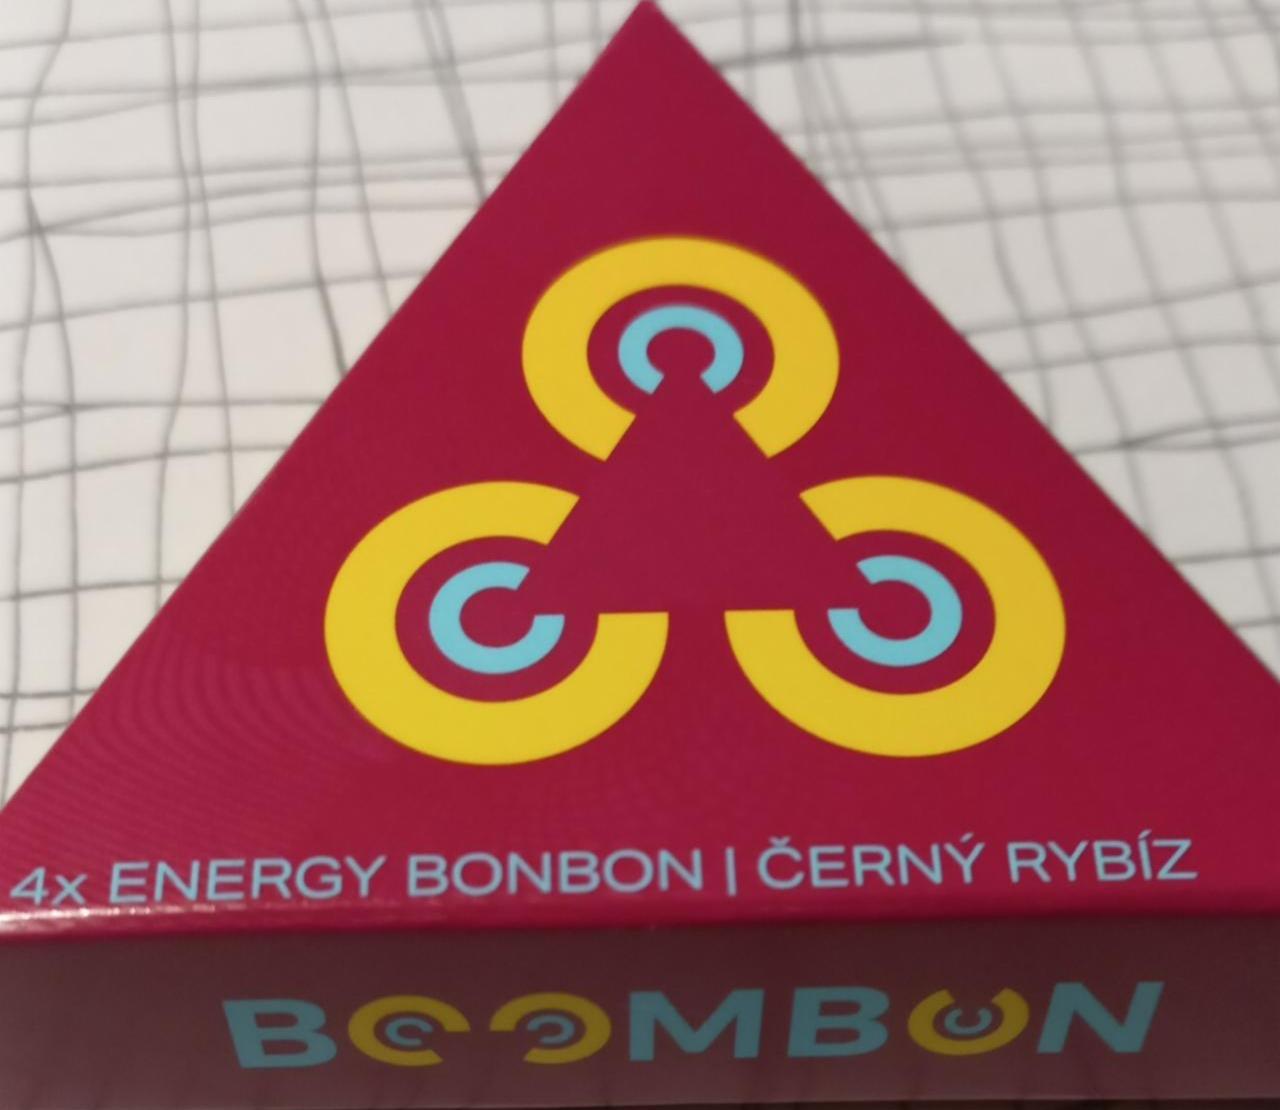 Fotografie - Energy bonbon Černý rybíz Boombon